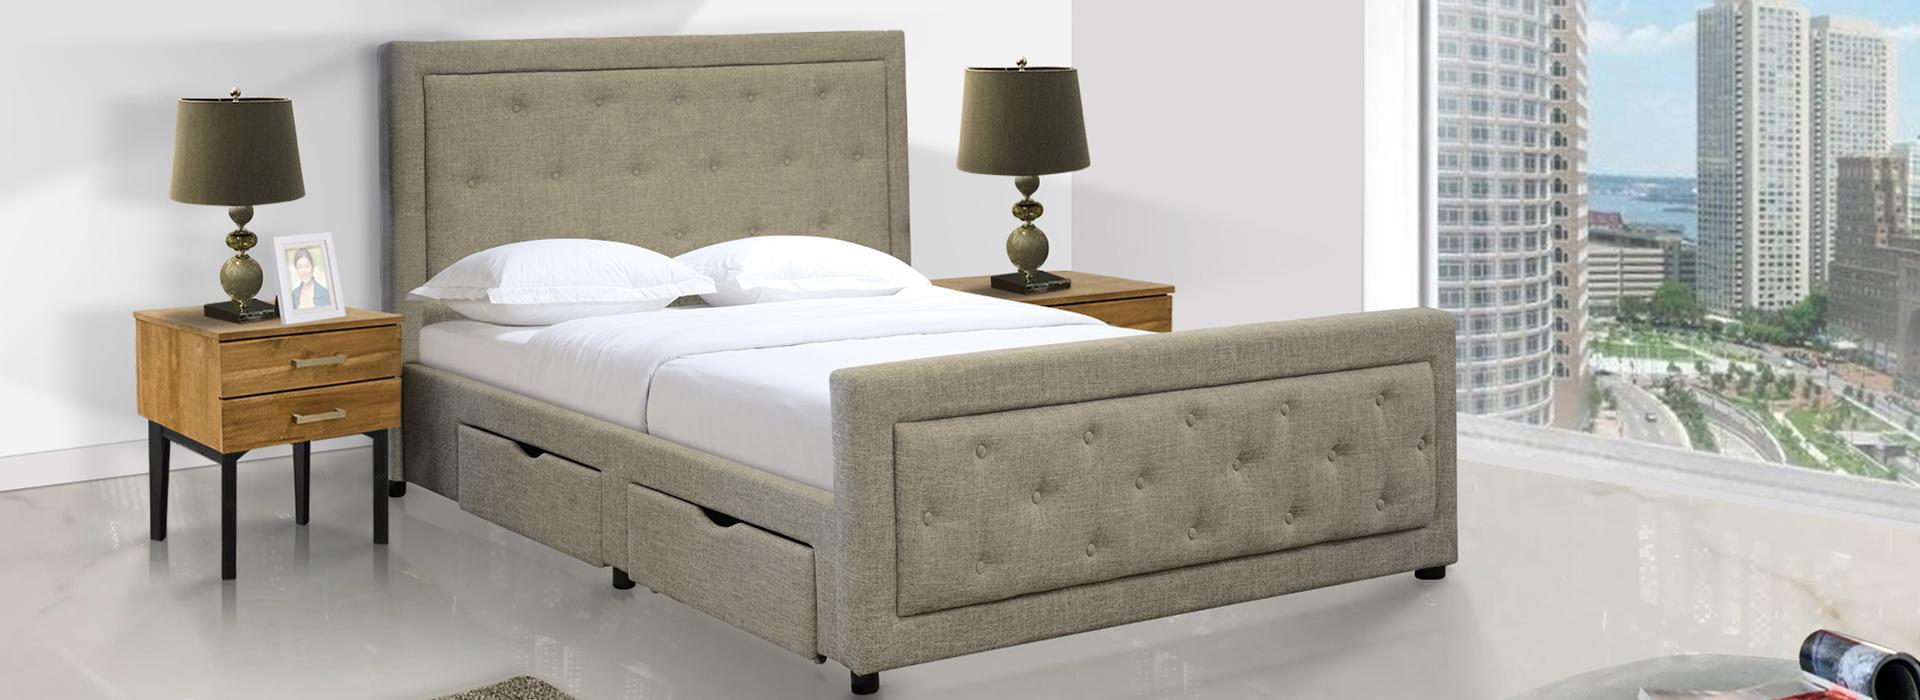 furniture republic sofa bed